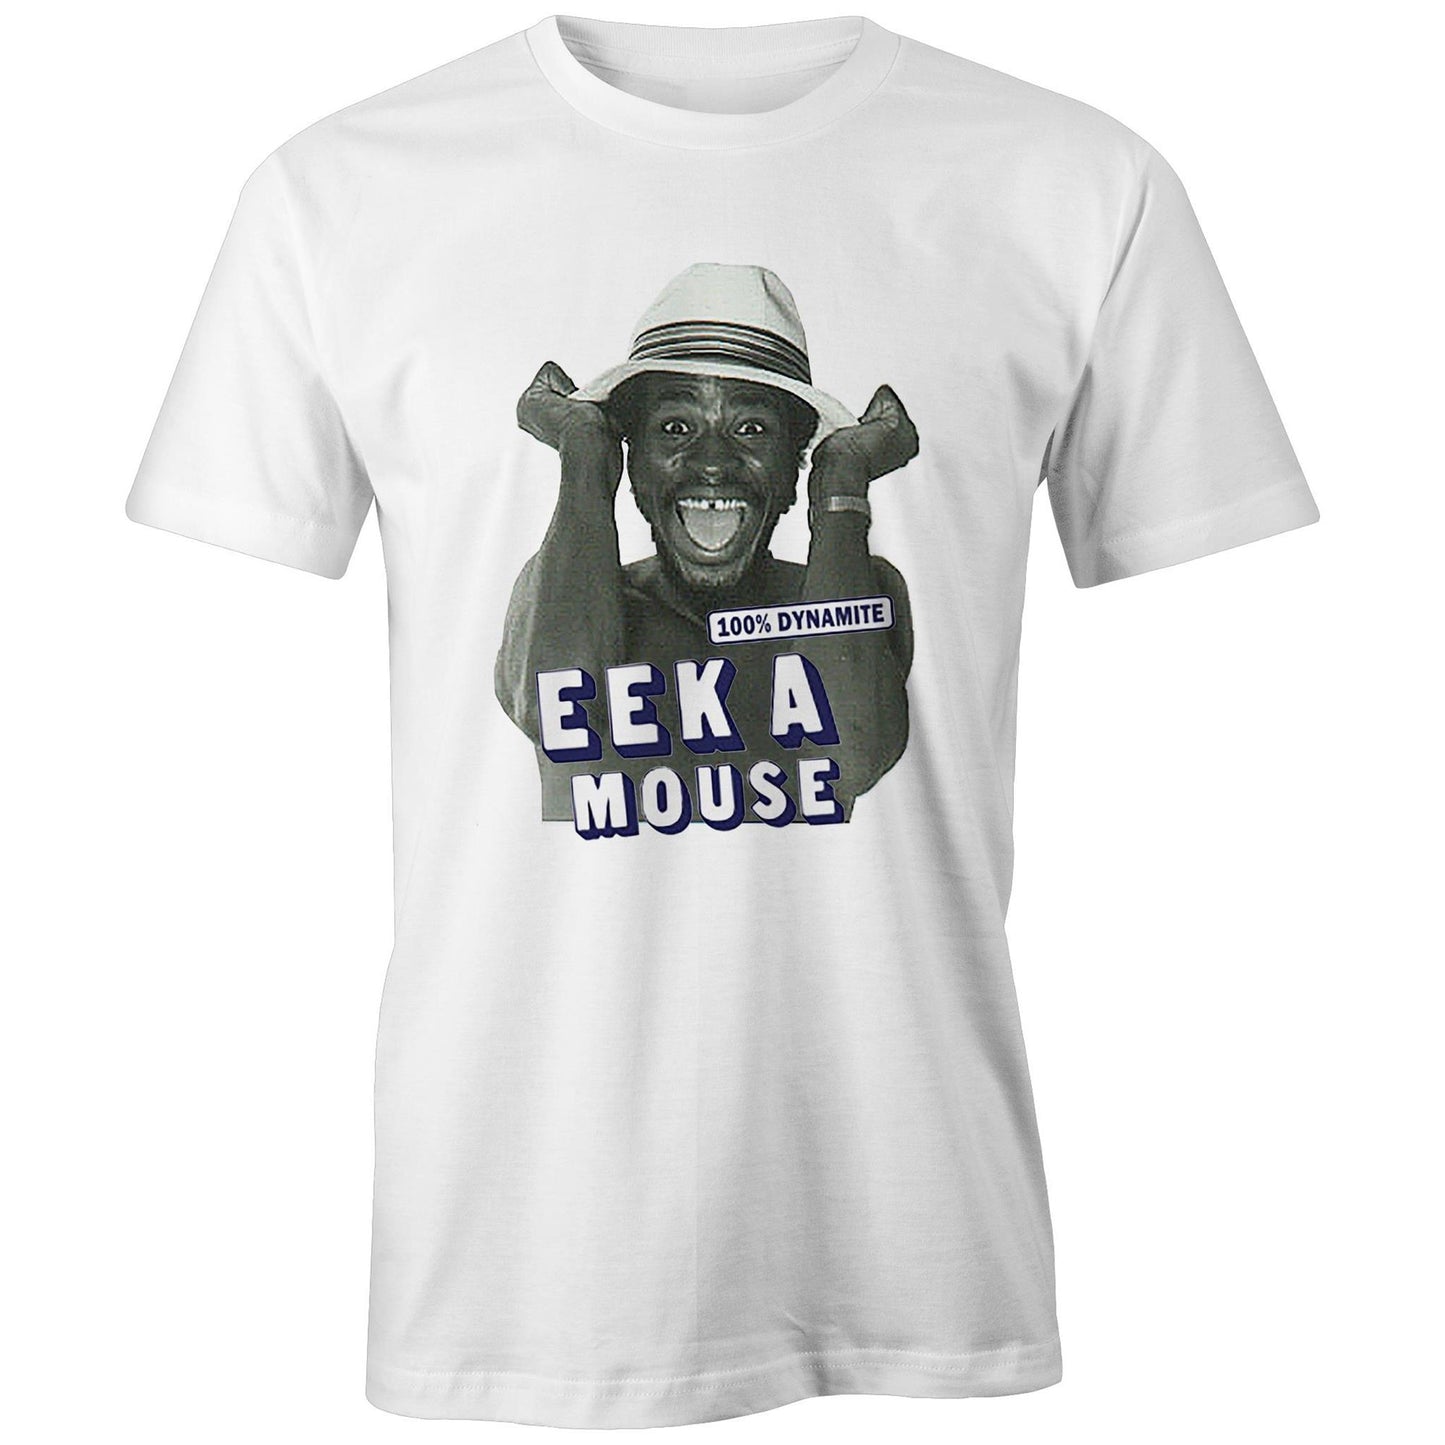 Bootlegged Eek a mouse shirt